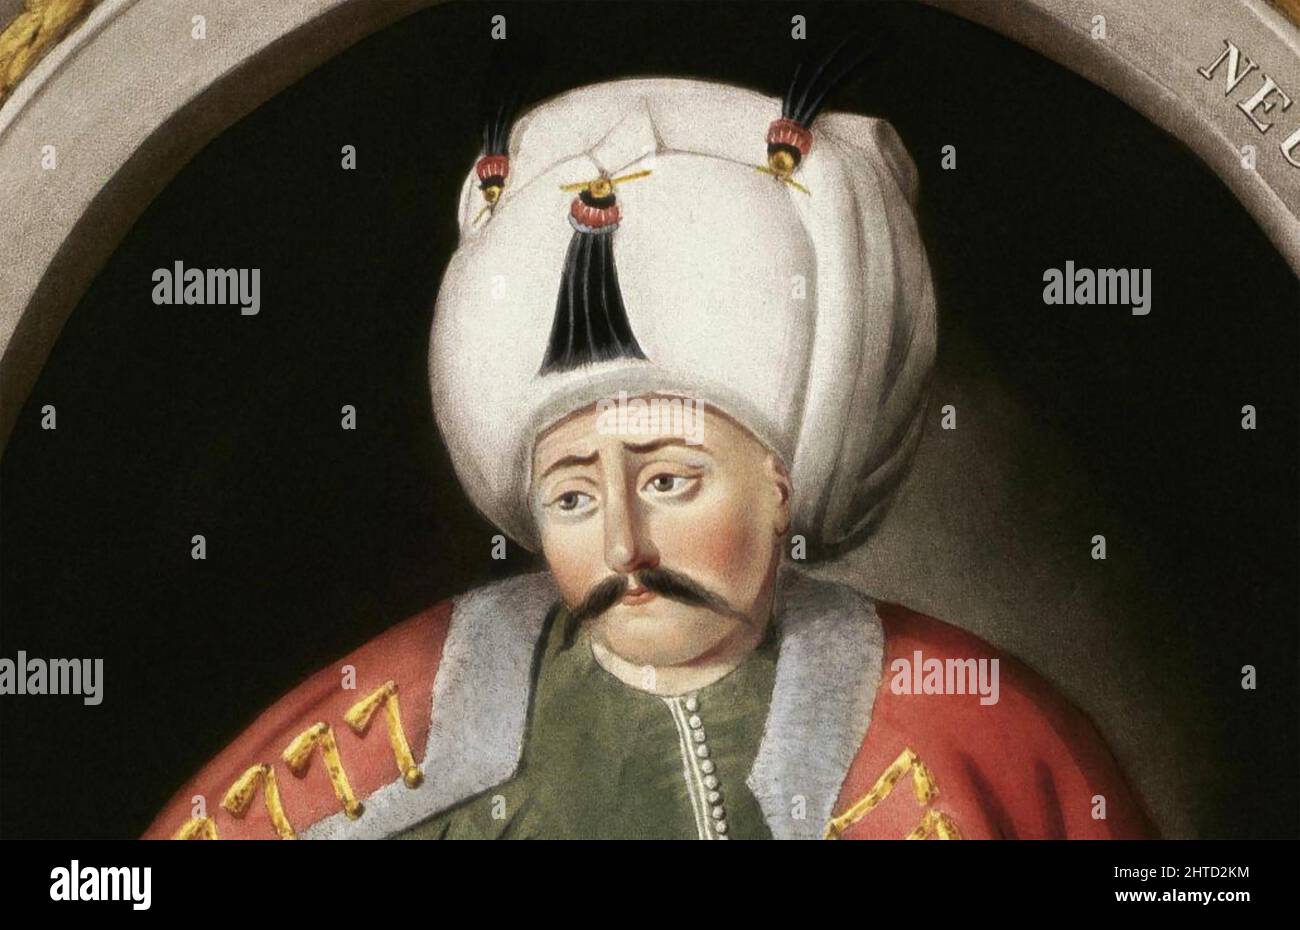 SELIM i (1470-1520) Sultano dell'Impero Ottomano Foto Stock